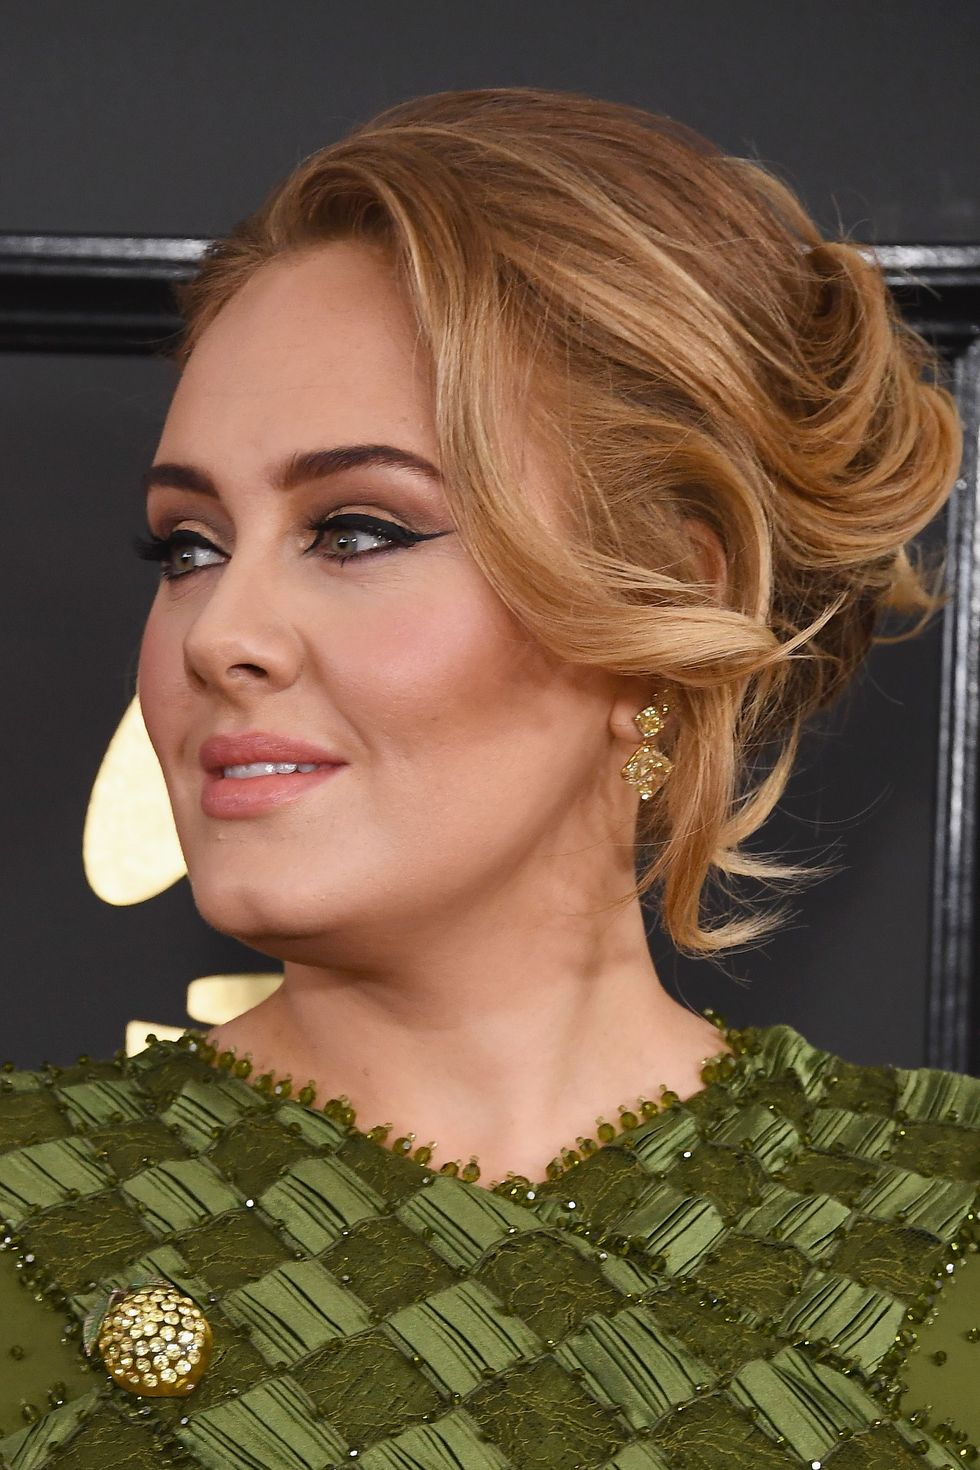 I get really bad seasonal depression': Adele explains why she